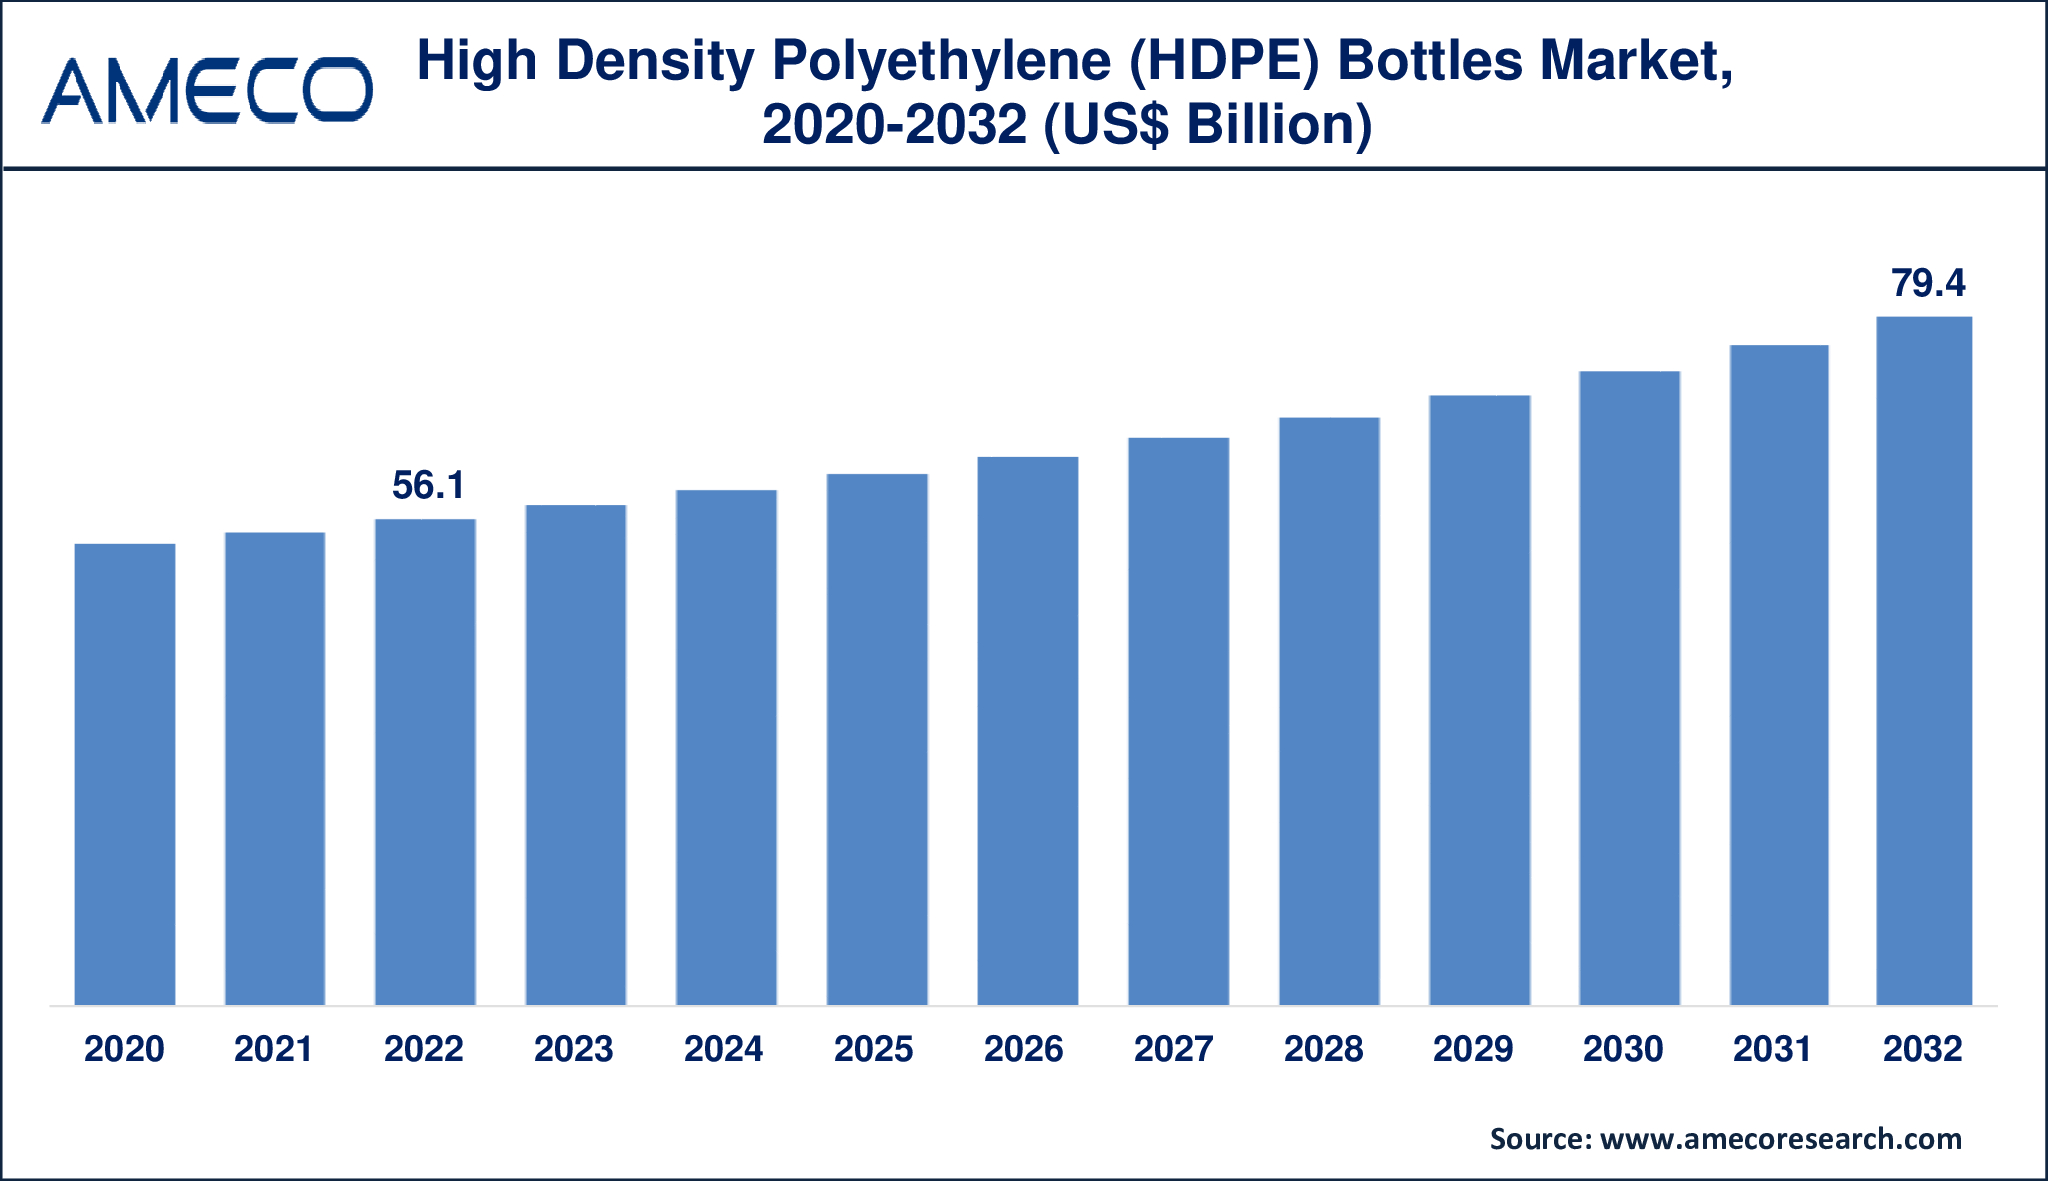 High Density Polyethylene (HDPE) Bottles Market Dynamics